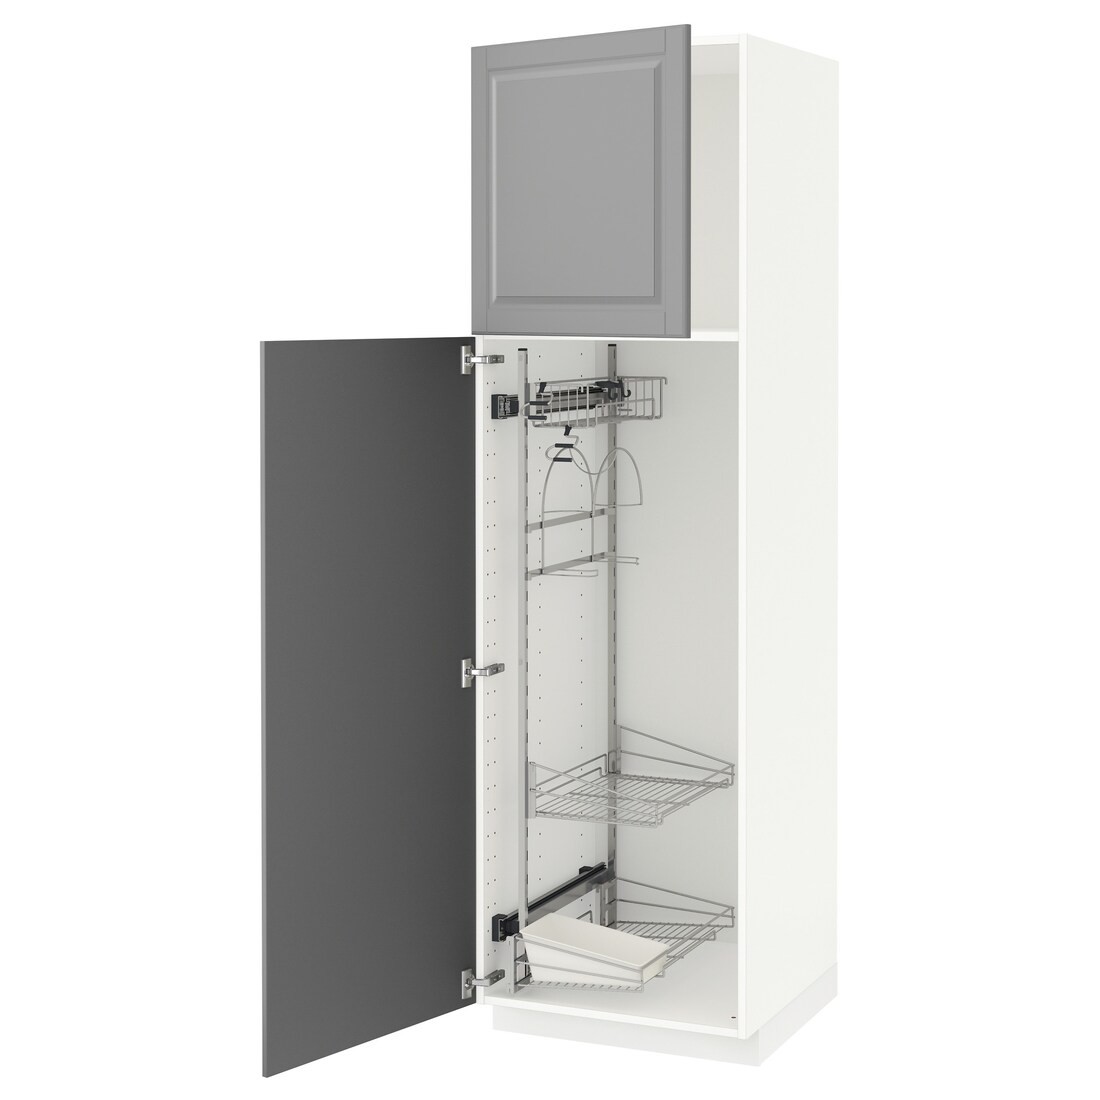 METOD МЕТОД Высокий шкаф с отделением для аксессуаров для уборки, белый / Bodbyn серый, 60x60x200 см